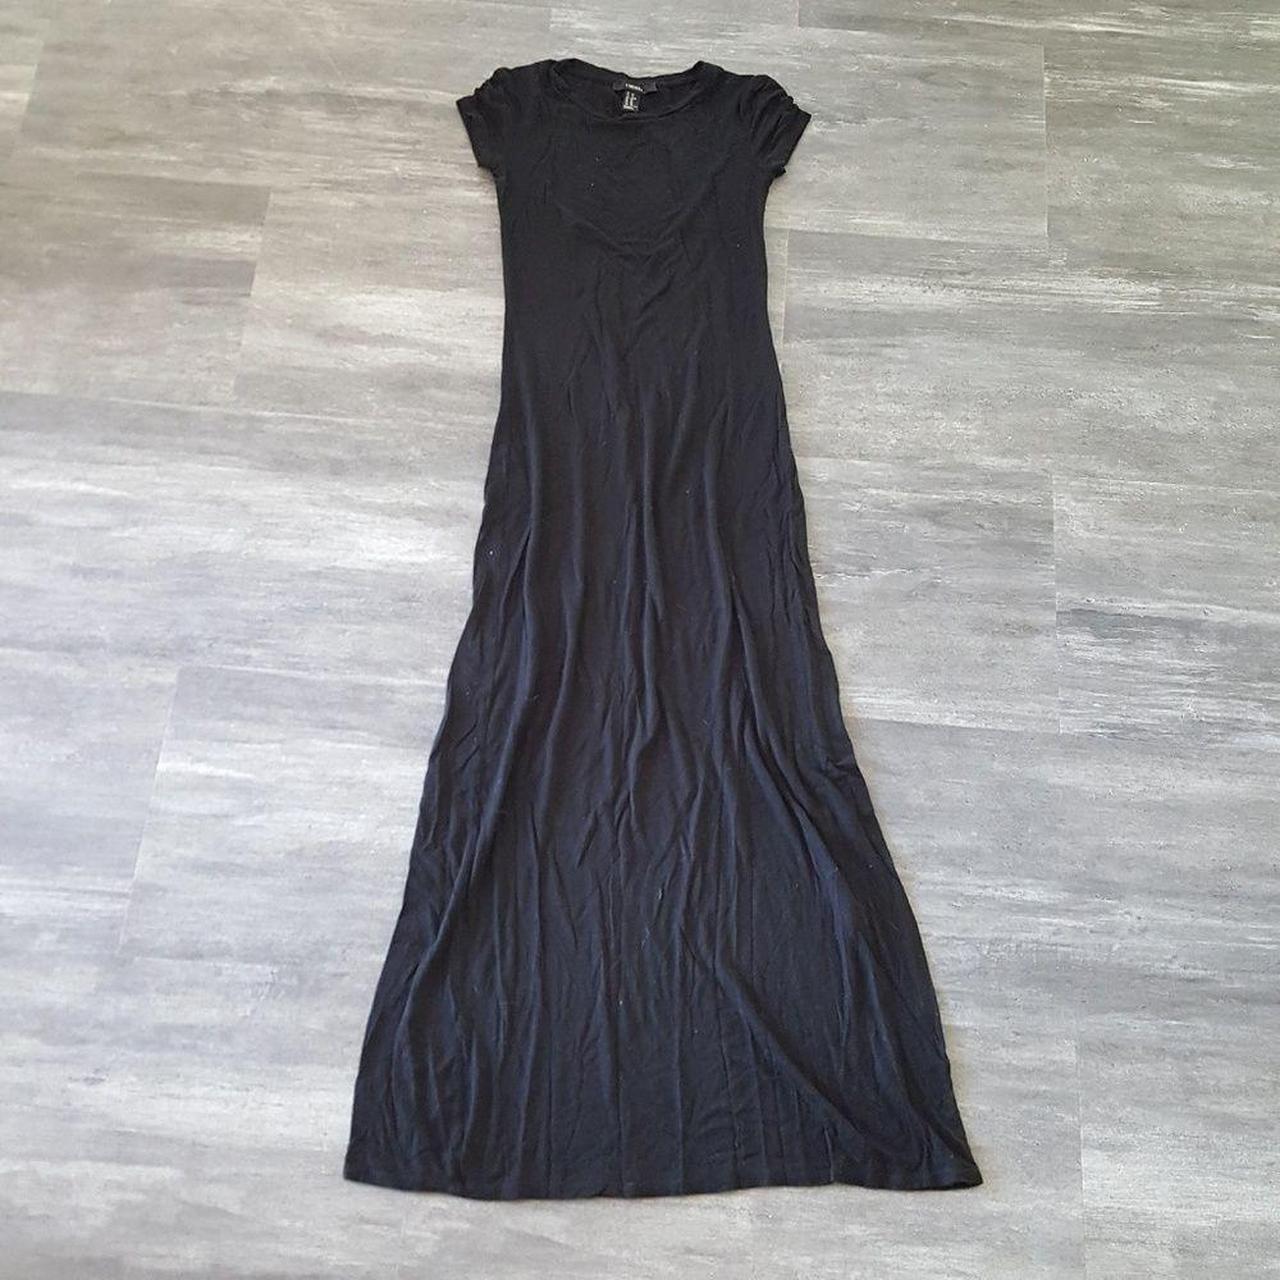 Forever 21 Women's Black Dress